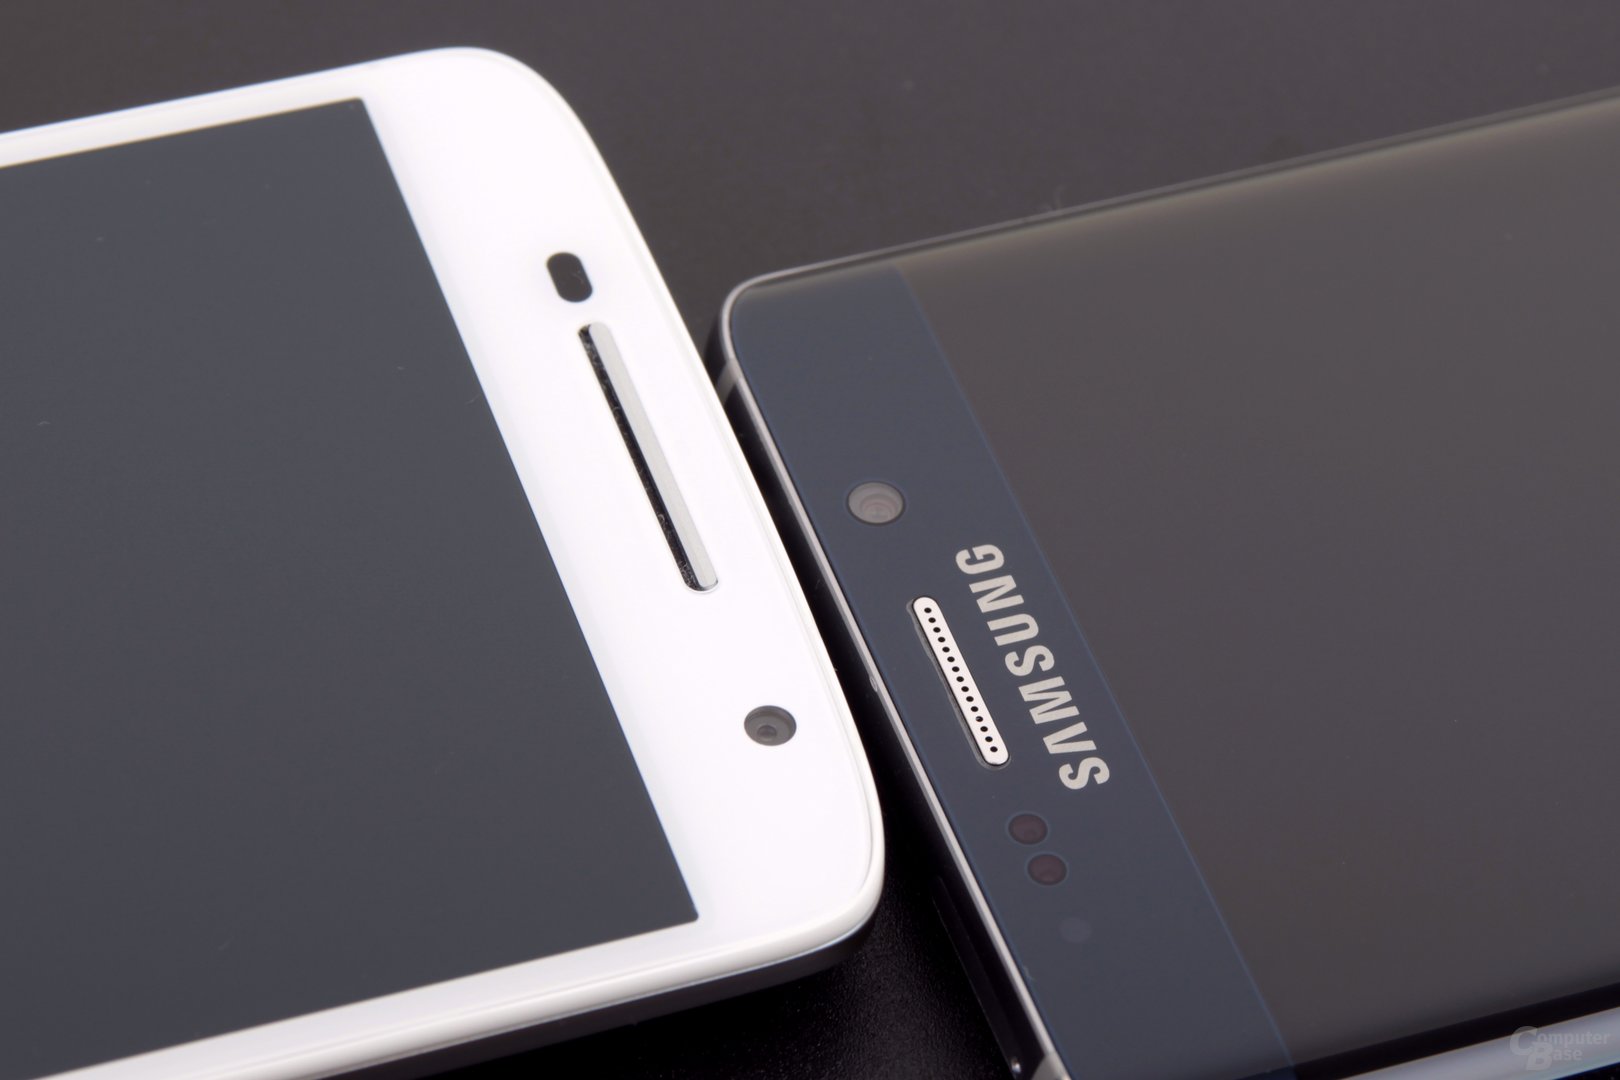 Das Galaxy S6 edge+ hat auf den ersten Blick keinen Displayrahmen